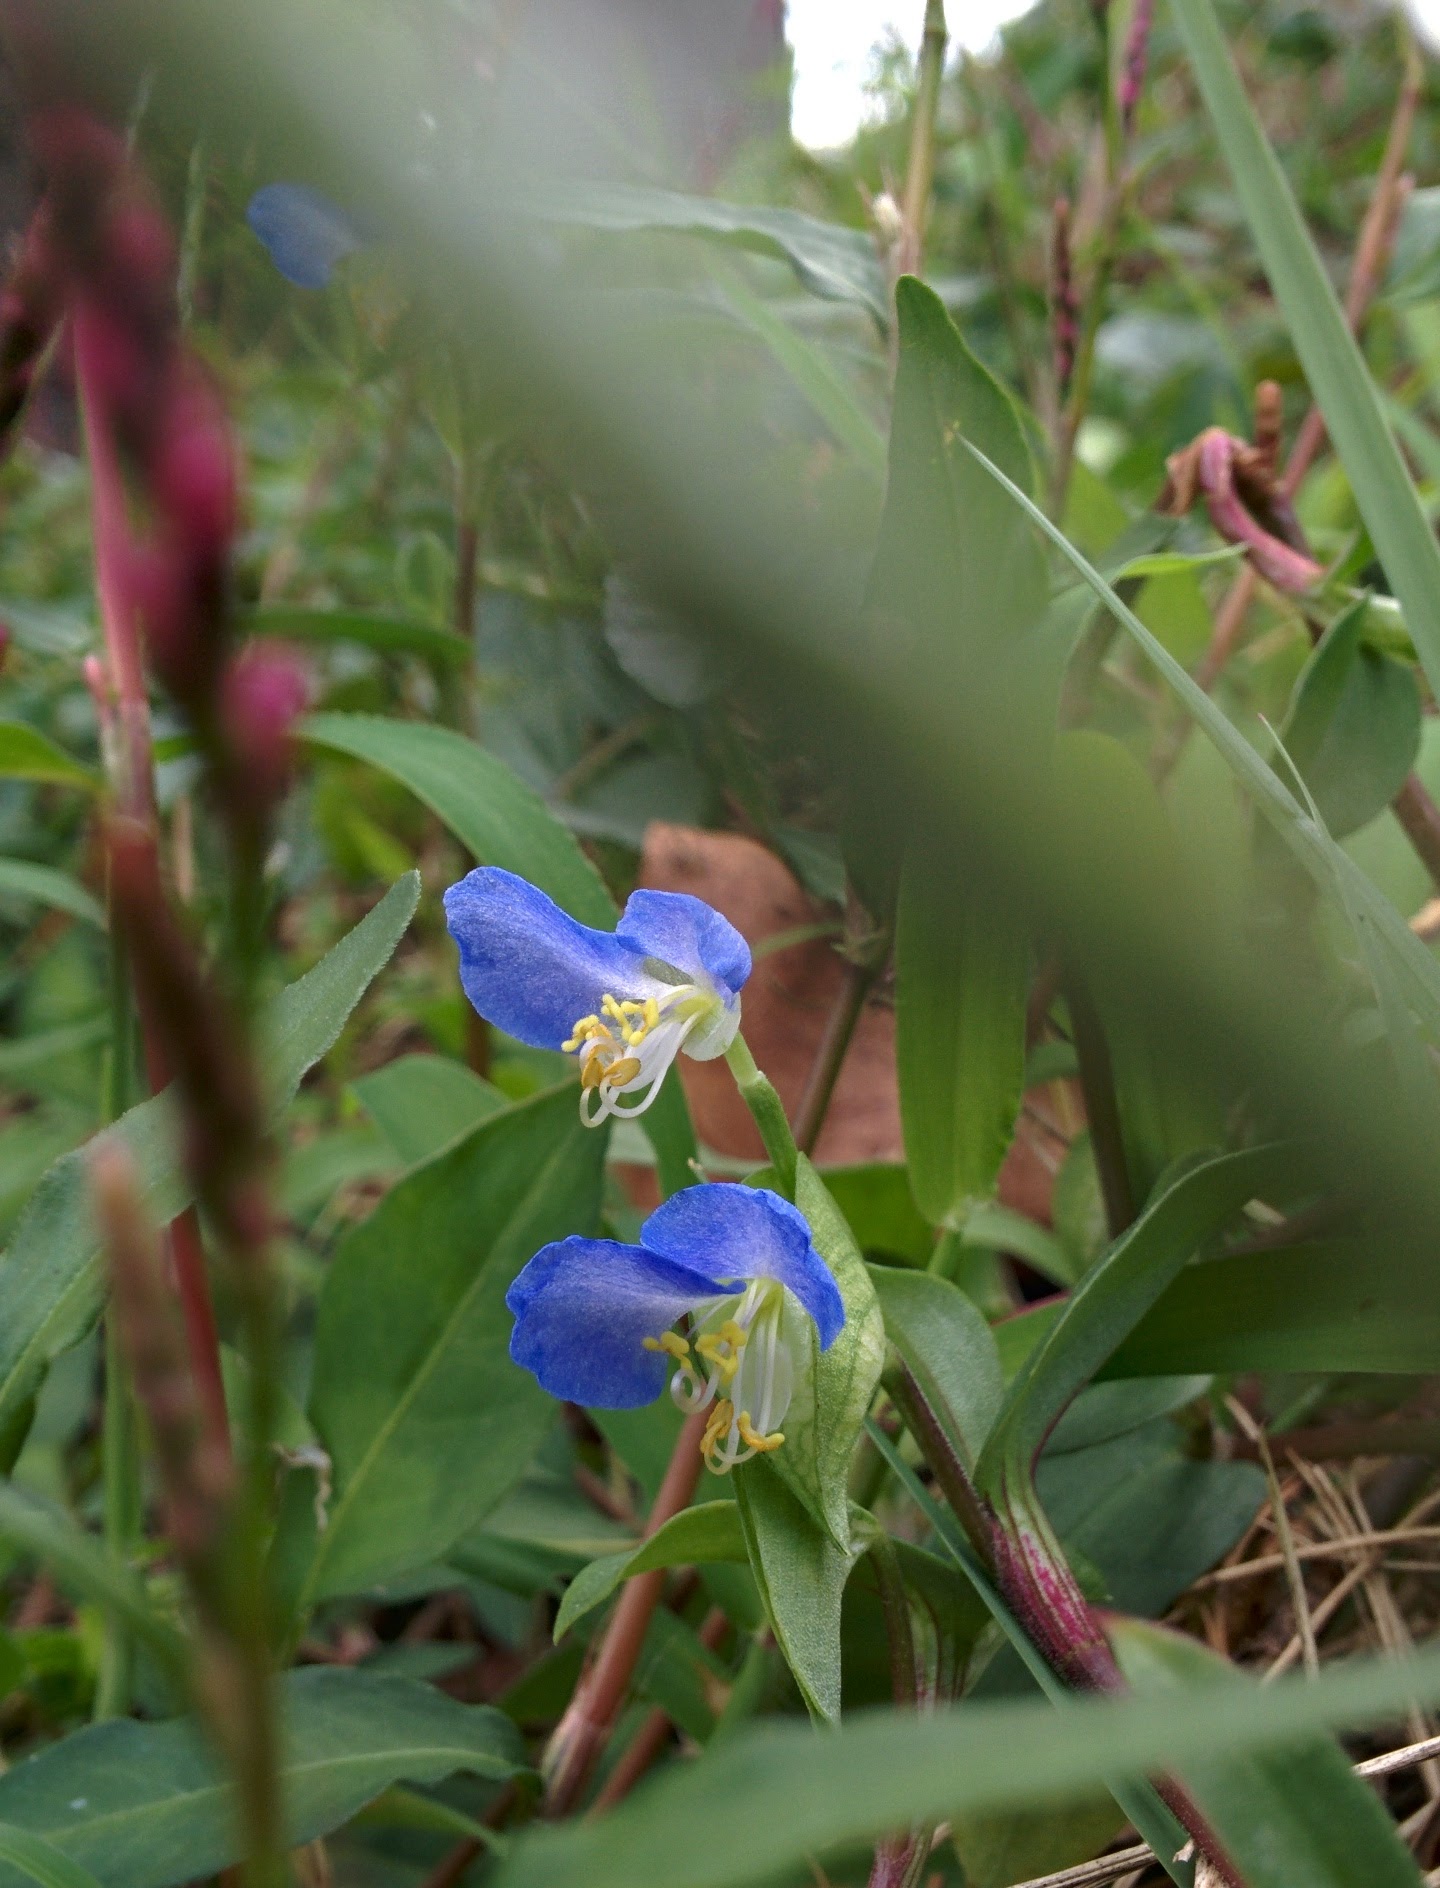 IMG_20150916_143448.jpg 파란색이 인상적인 닭의장풀(달개비) 꽃